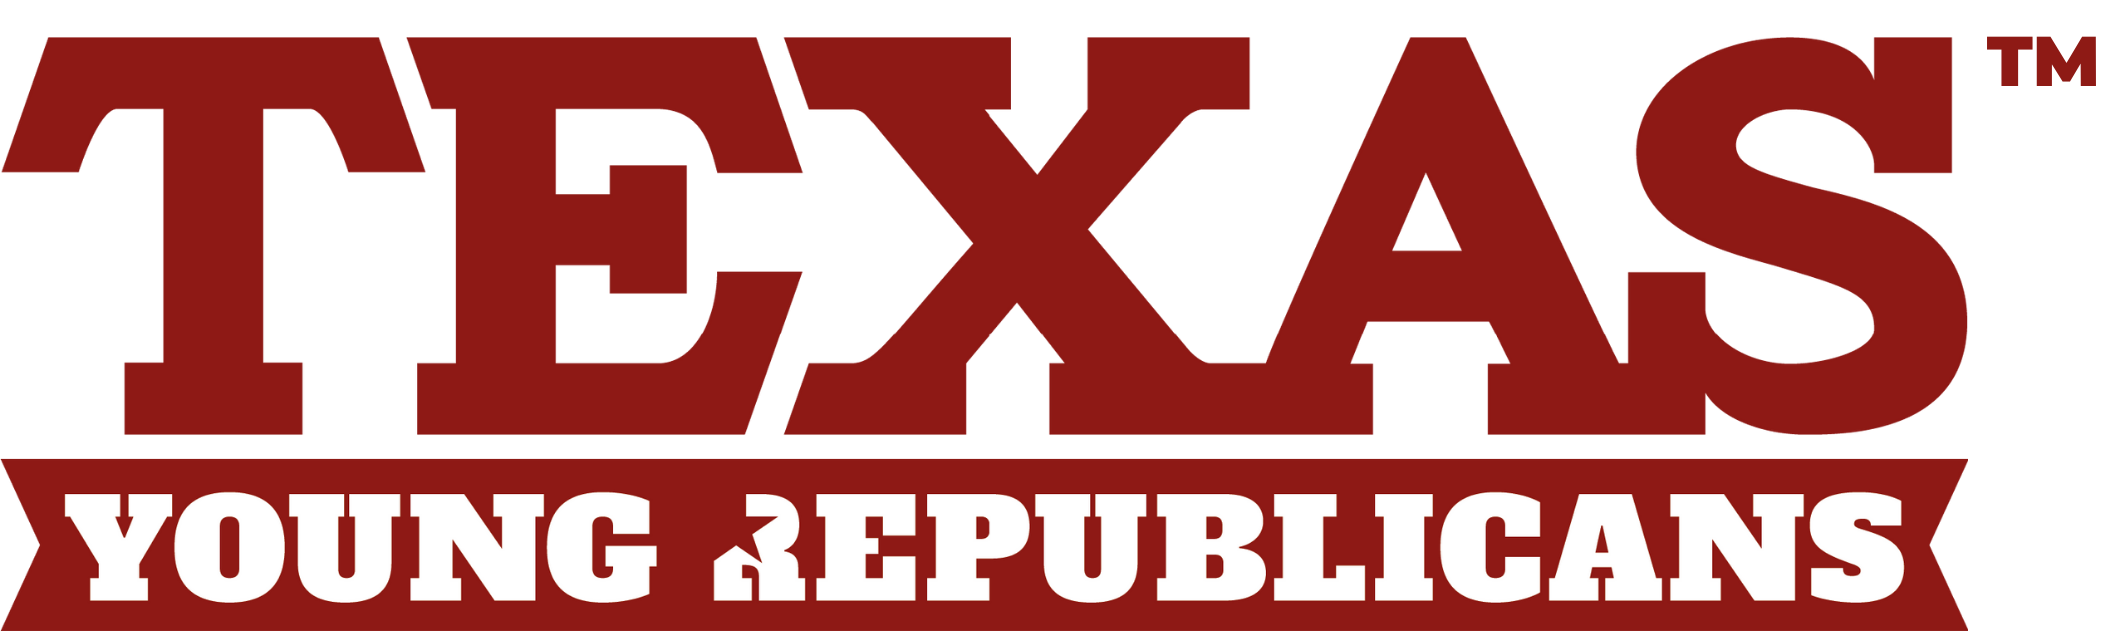 Texas Young Republicans Logo